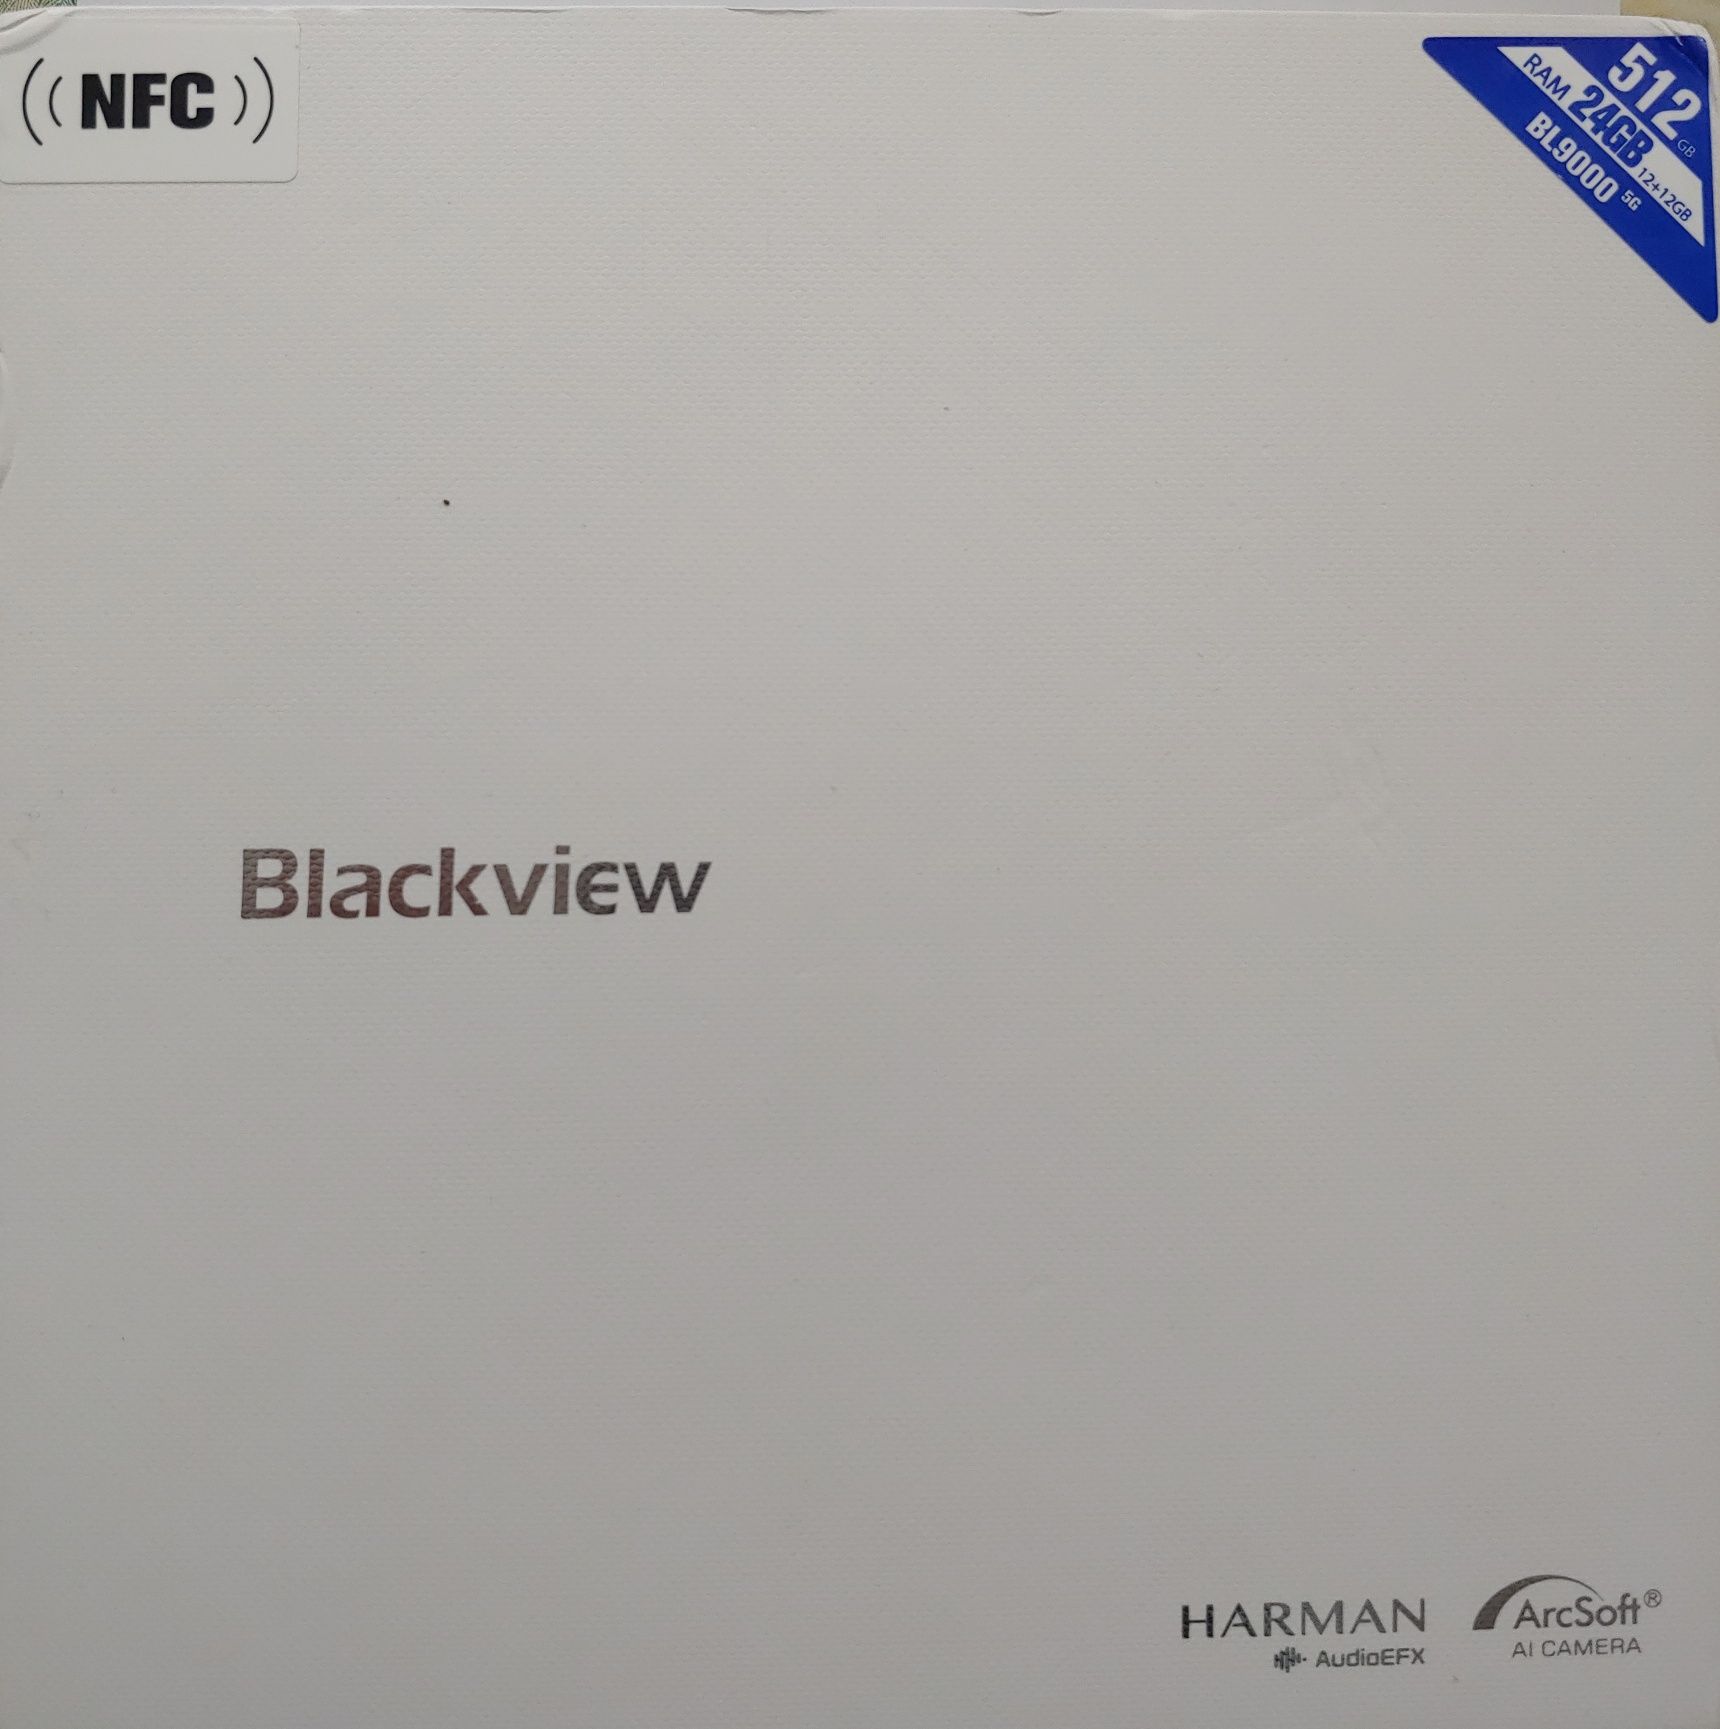 Blackview bl9000